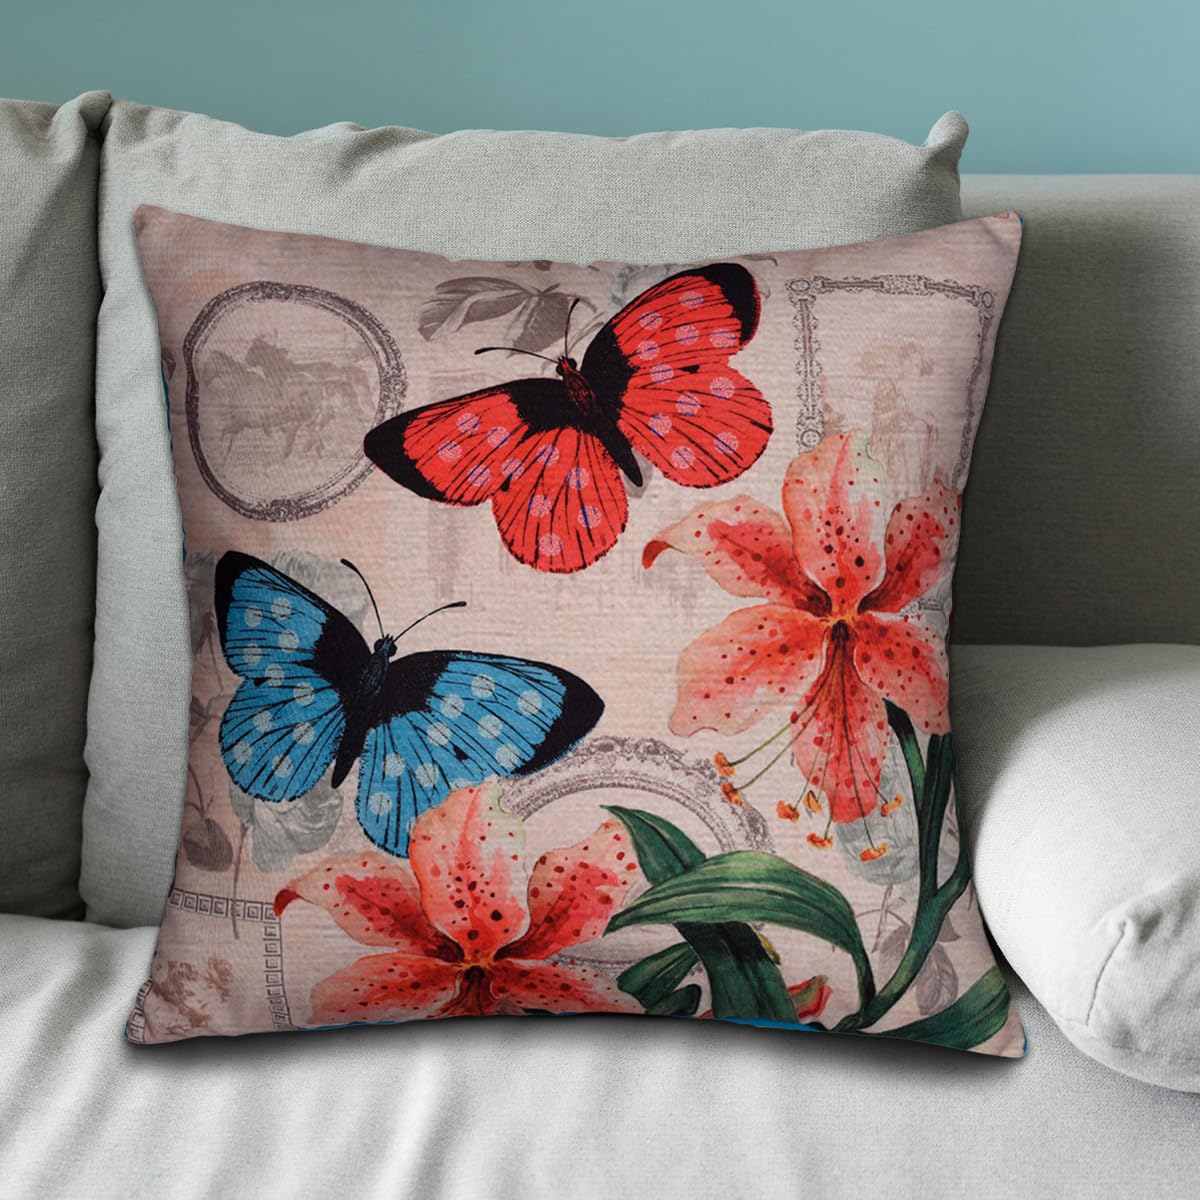 Butterflies Printed Design Throw Pillow Covers - Decozen